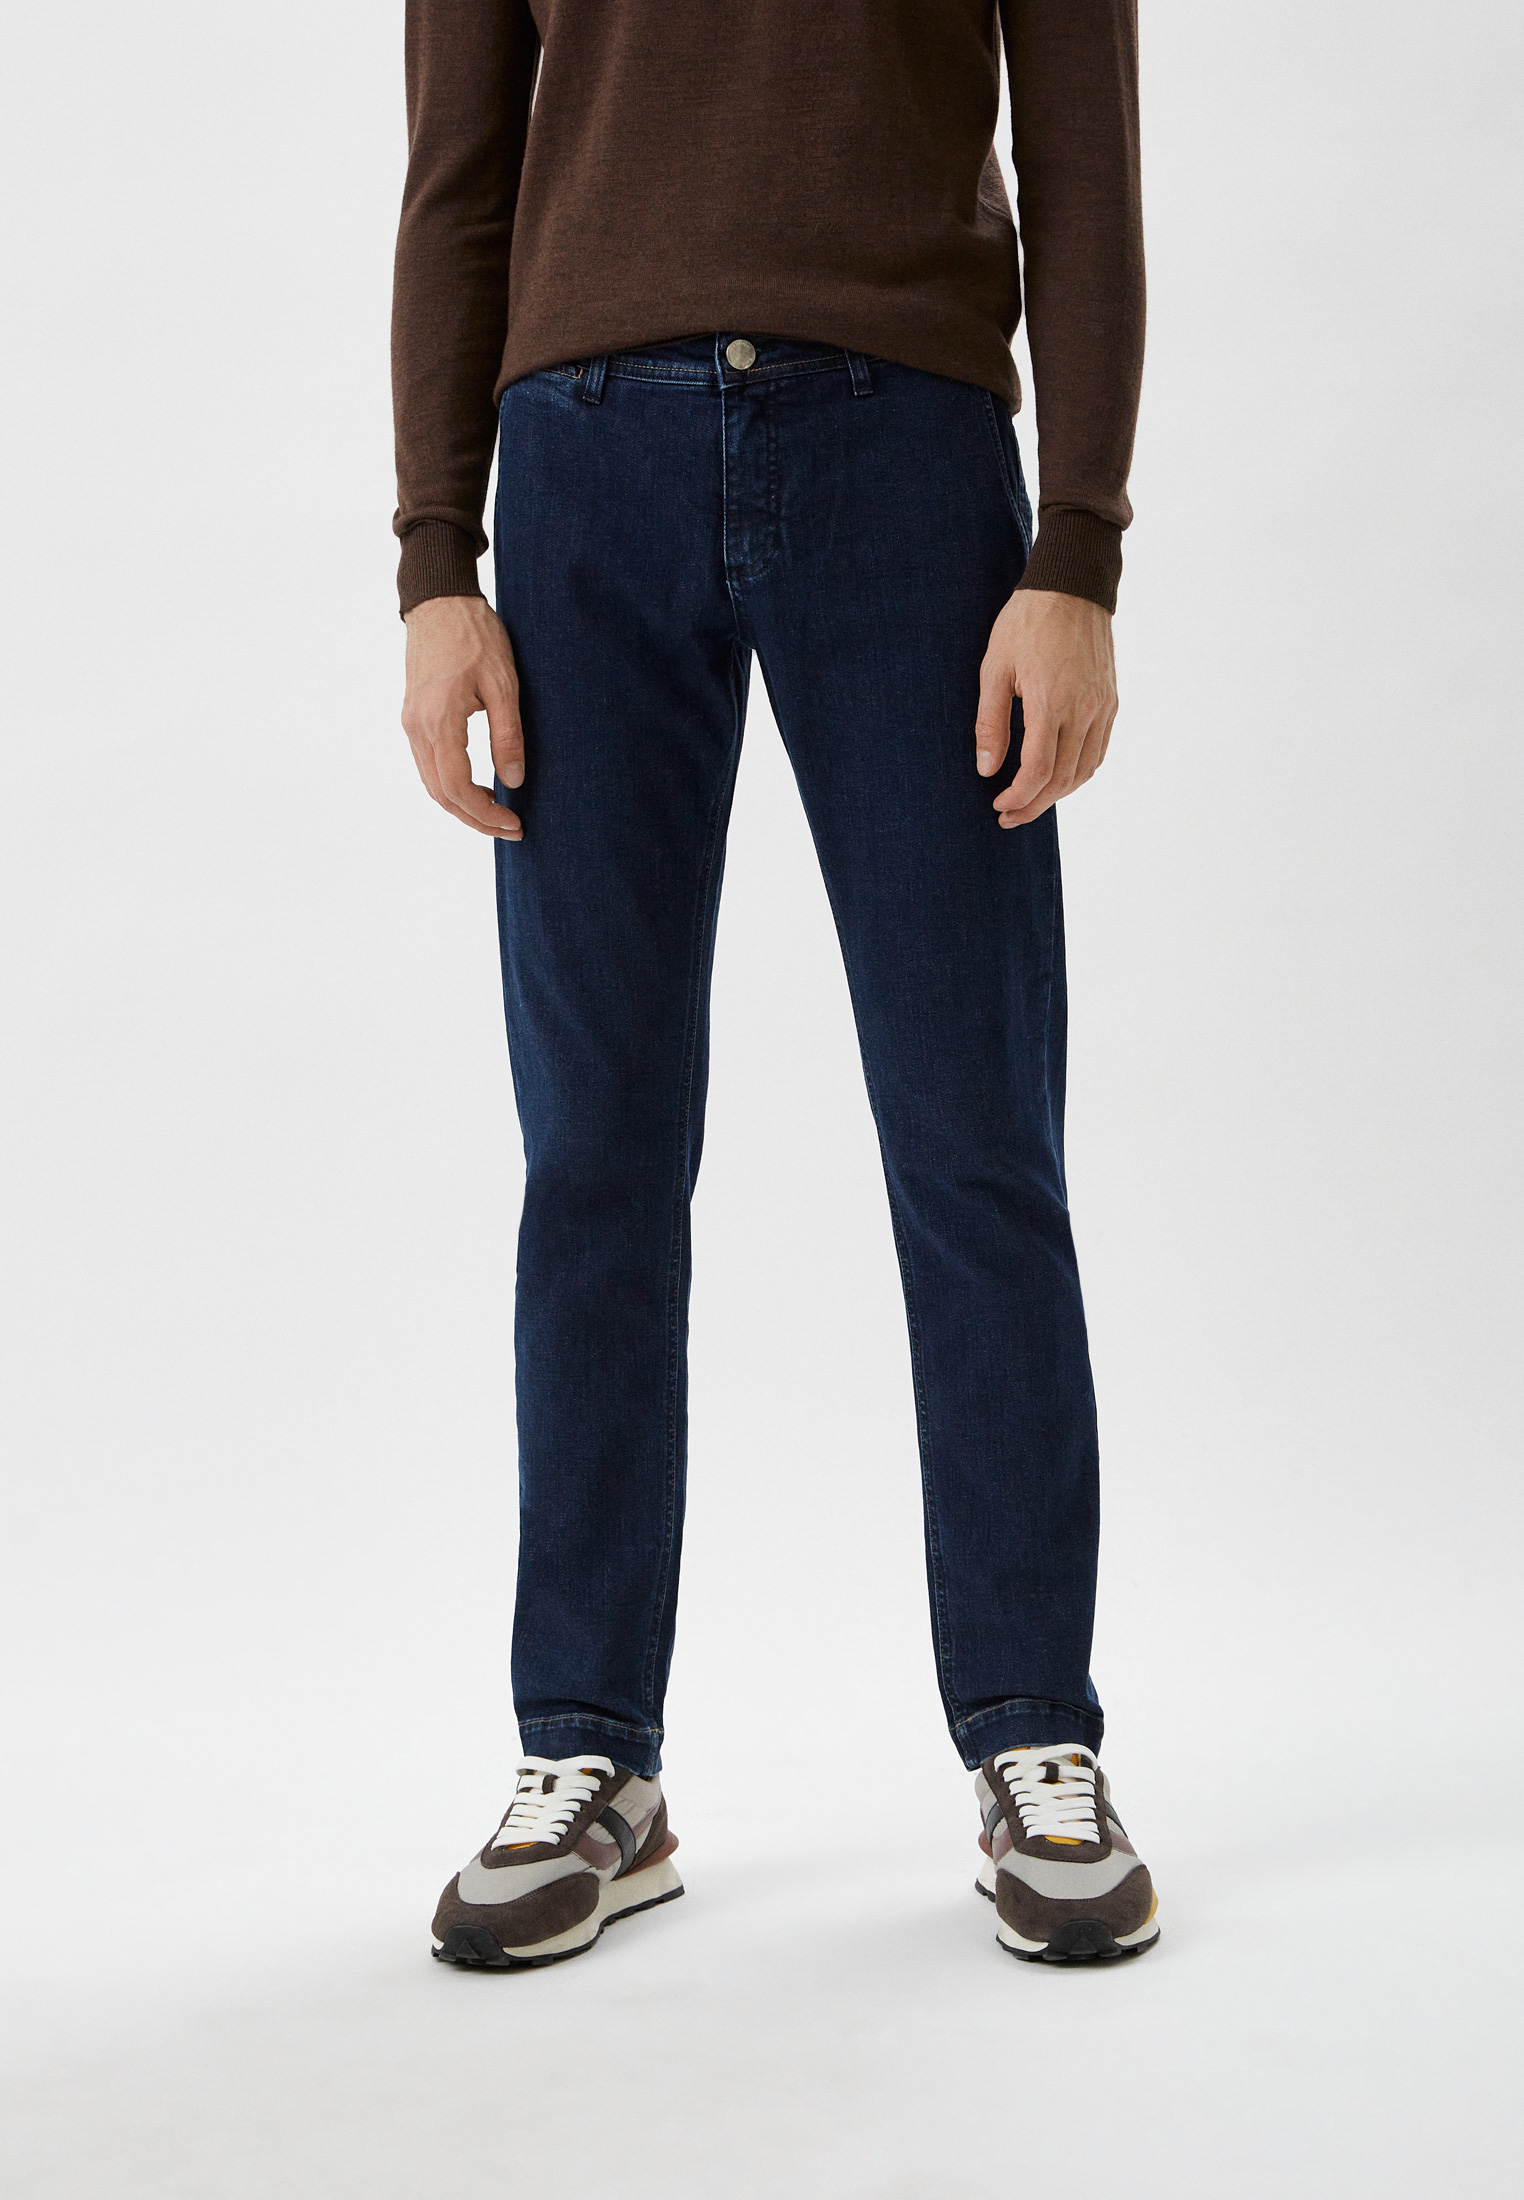 Мужские прямые джинсы Baldinini (Балдинини) M11: изображение 1